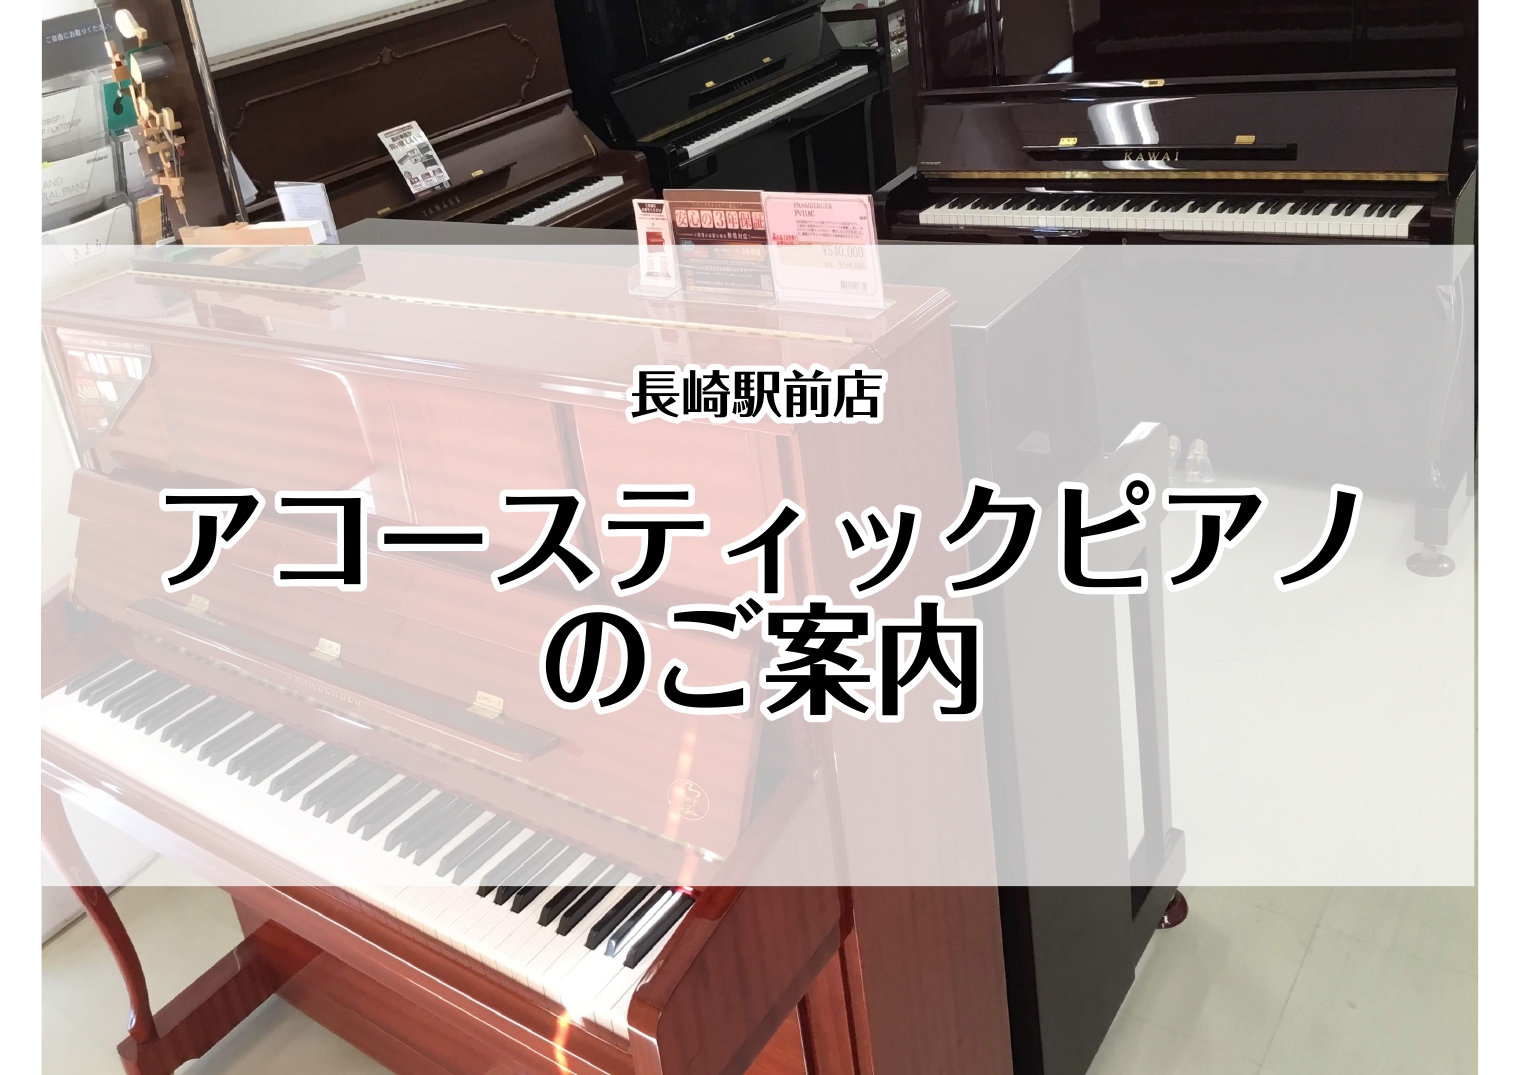 *アップライトピアノ9台展示中！ いつも島村楽器長崎駅前店をご利用下さいまして誠にありがとうございます。 当店ではヤマハ、カワイなどの国内ブランドはもちろん、当社推奨の海外ブランドのアップライトピアノも取り揃えております。また、一台限りのお買い得な中古ピアノも常時7台展示中。 皆様が「最適な一台」を […]